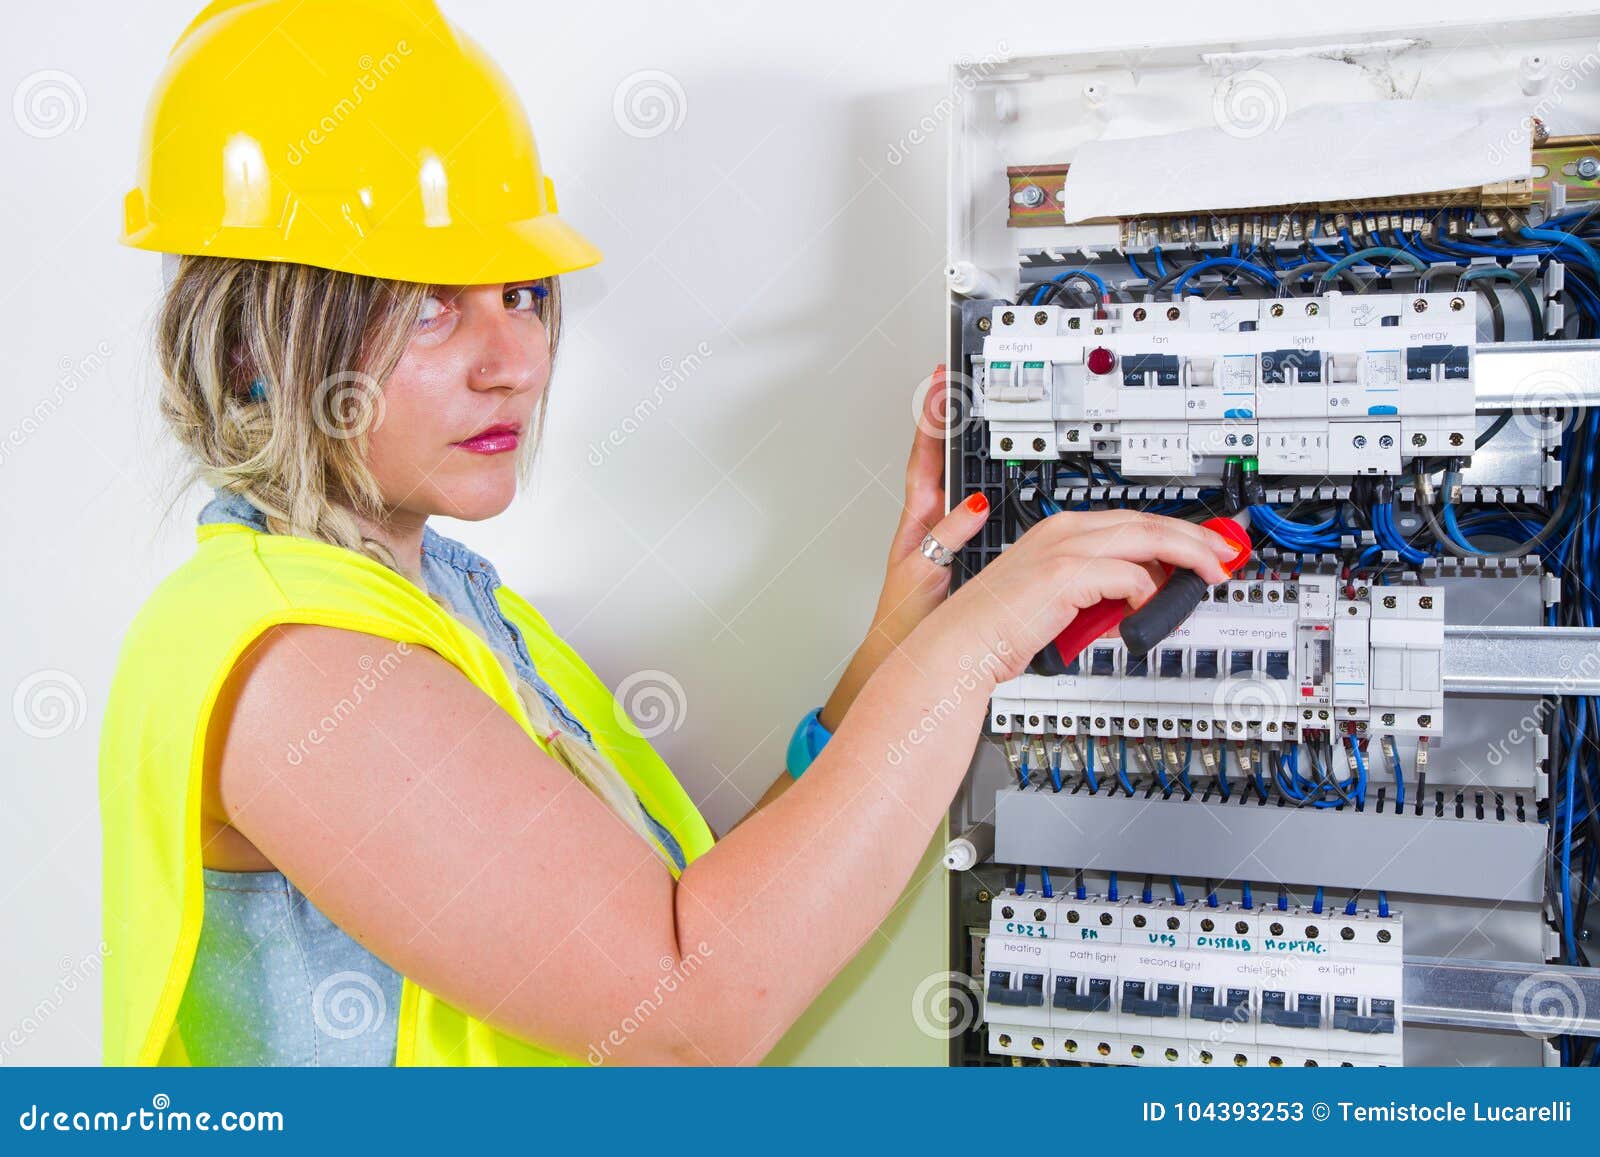 botsing motto werkloosheid Elektricien op het werk stock afbeelding. Image of helm - 104393253